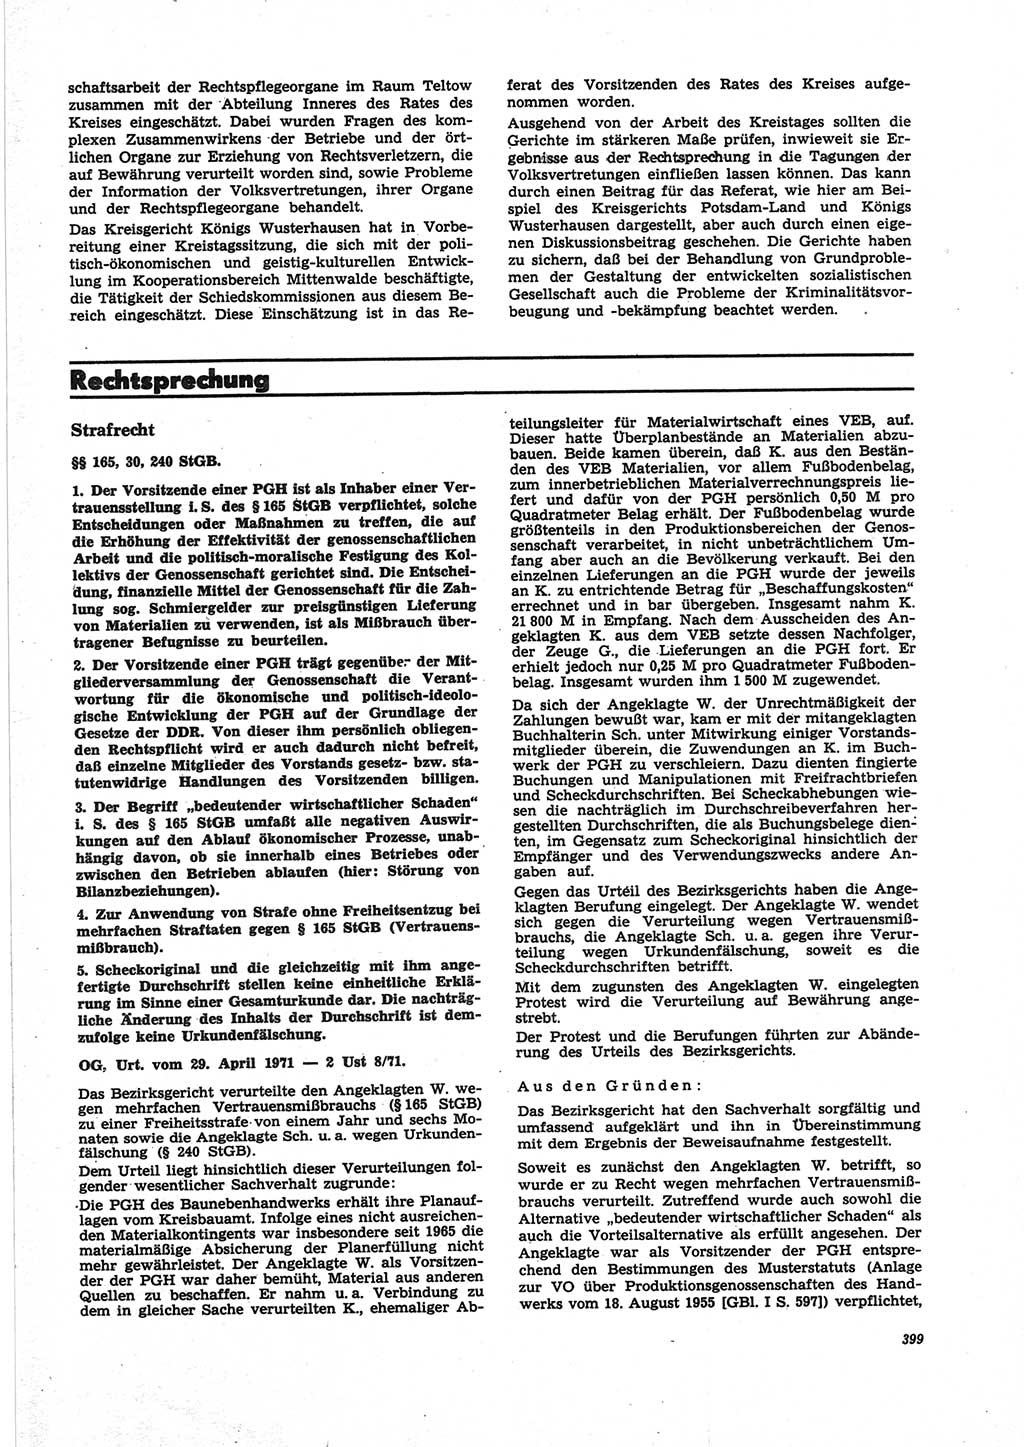 Neue Justiz (NJ), Zeitschrift für Recht und Rechtswissenschaft [Deutsche Demokratische Republik (DDR)], 25. Jahrgang 1971, Seite 399 (NJ DDR 1971, S. 399)